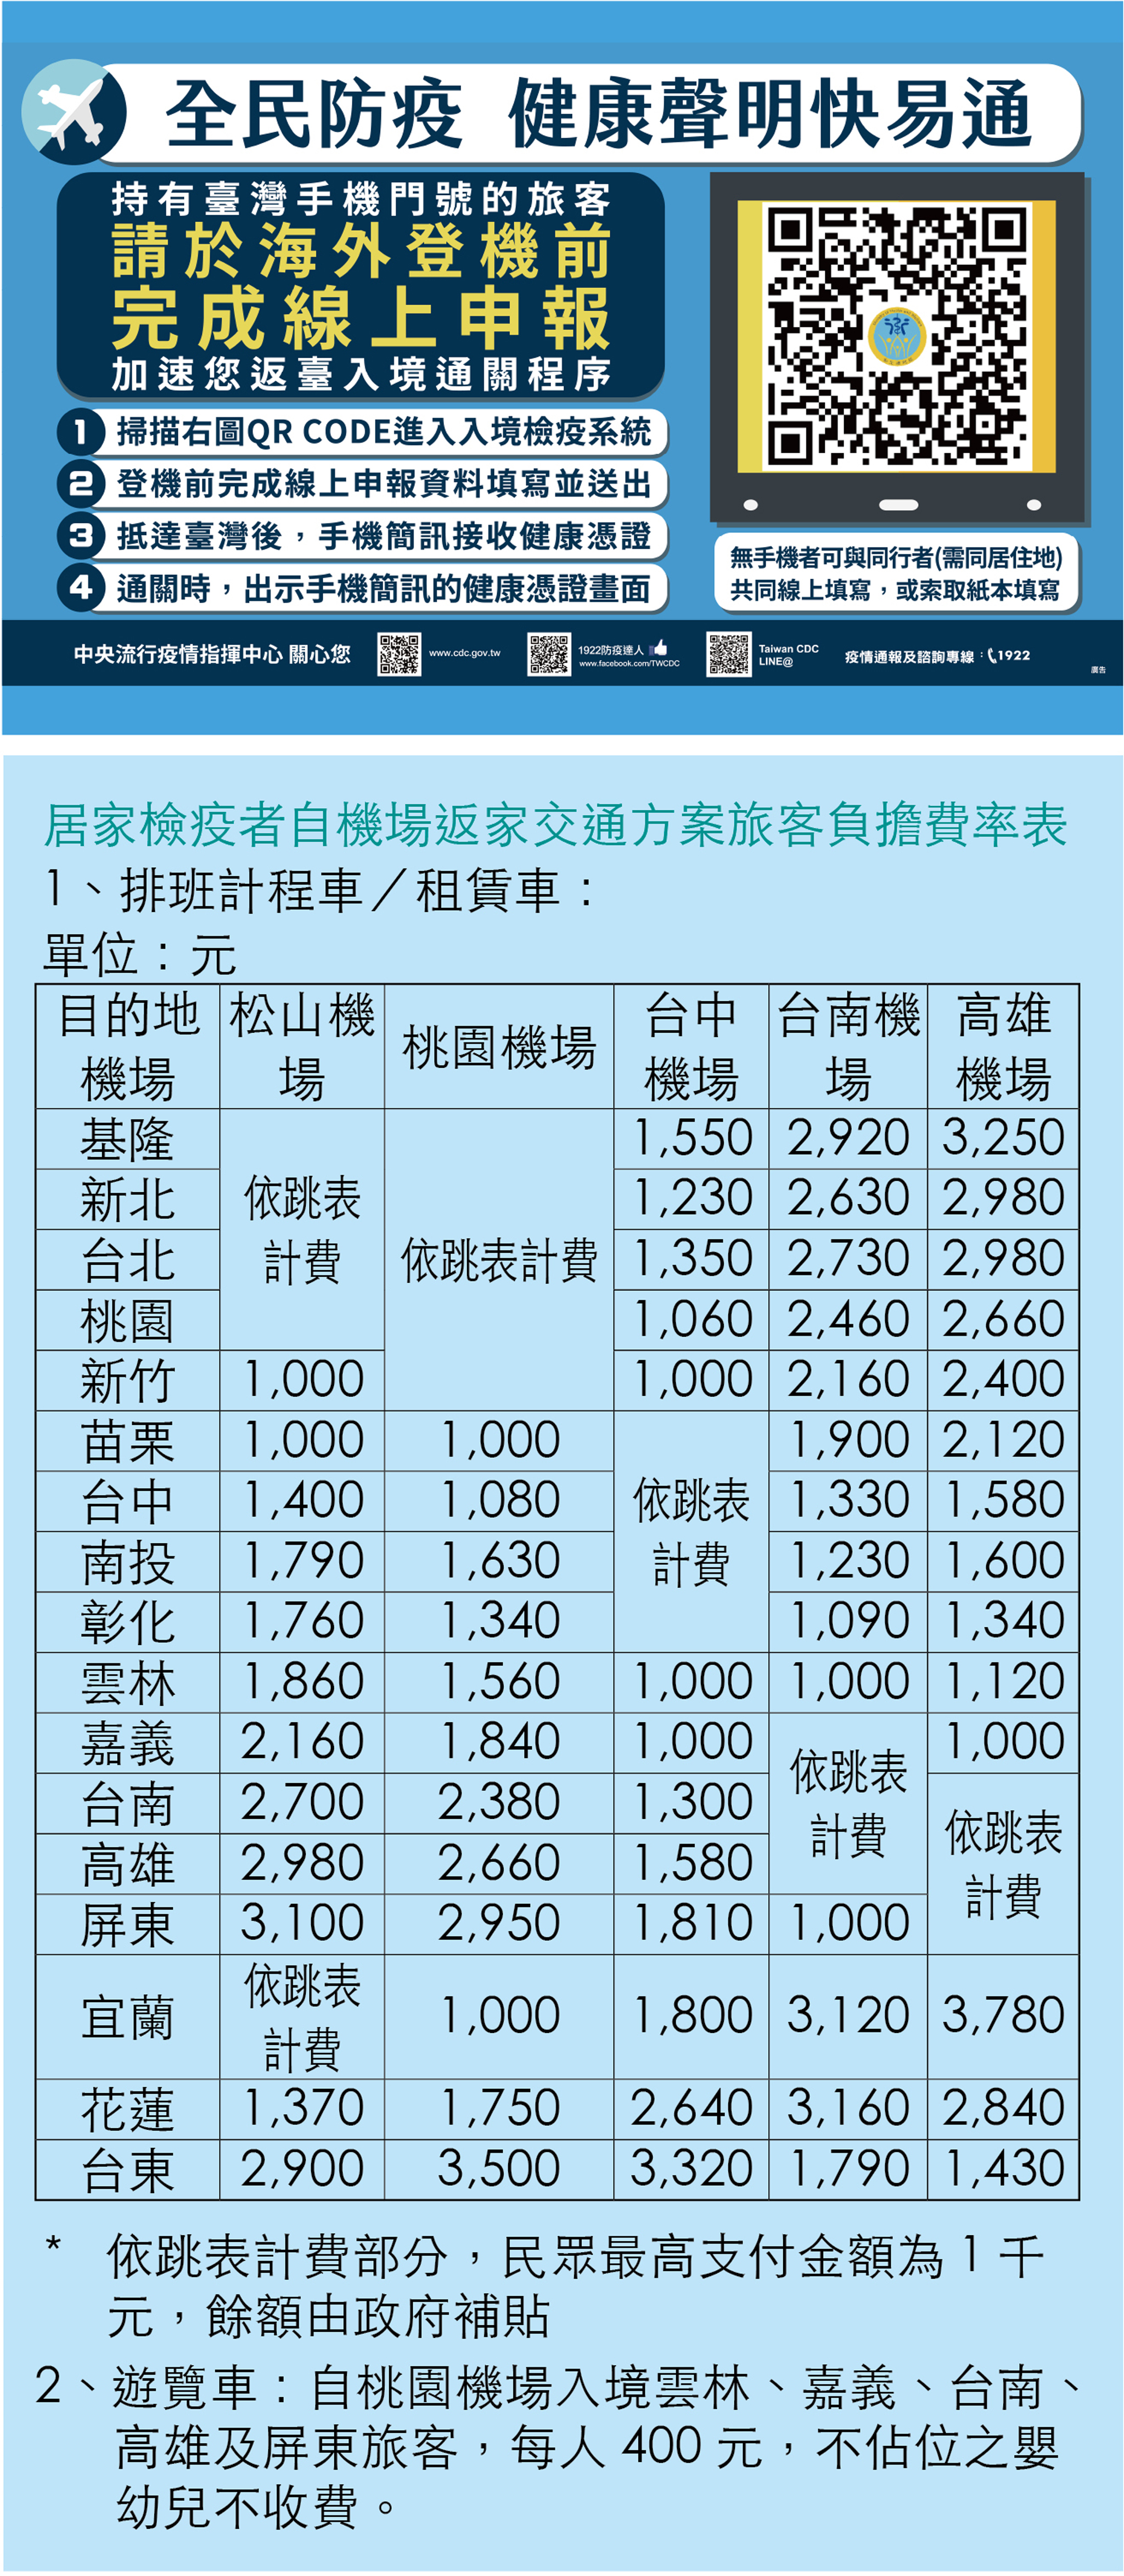 擁有台灣手機門號旅客可在海外登機前完成線上申報，欲搭乘防疫計程車可留意負擔費率。